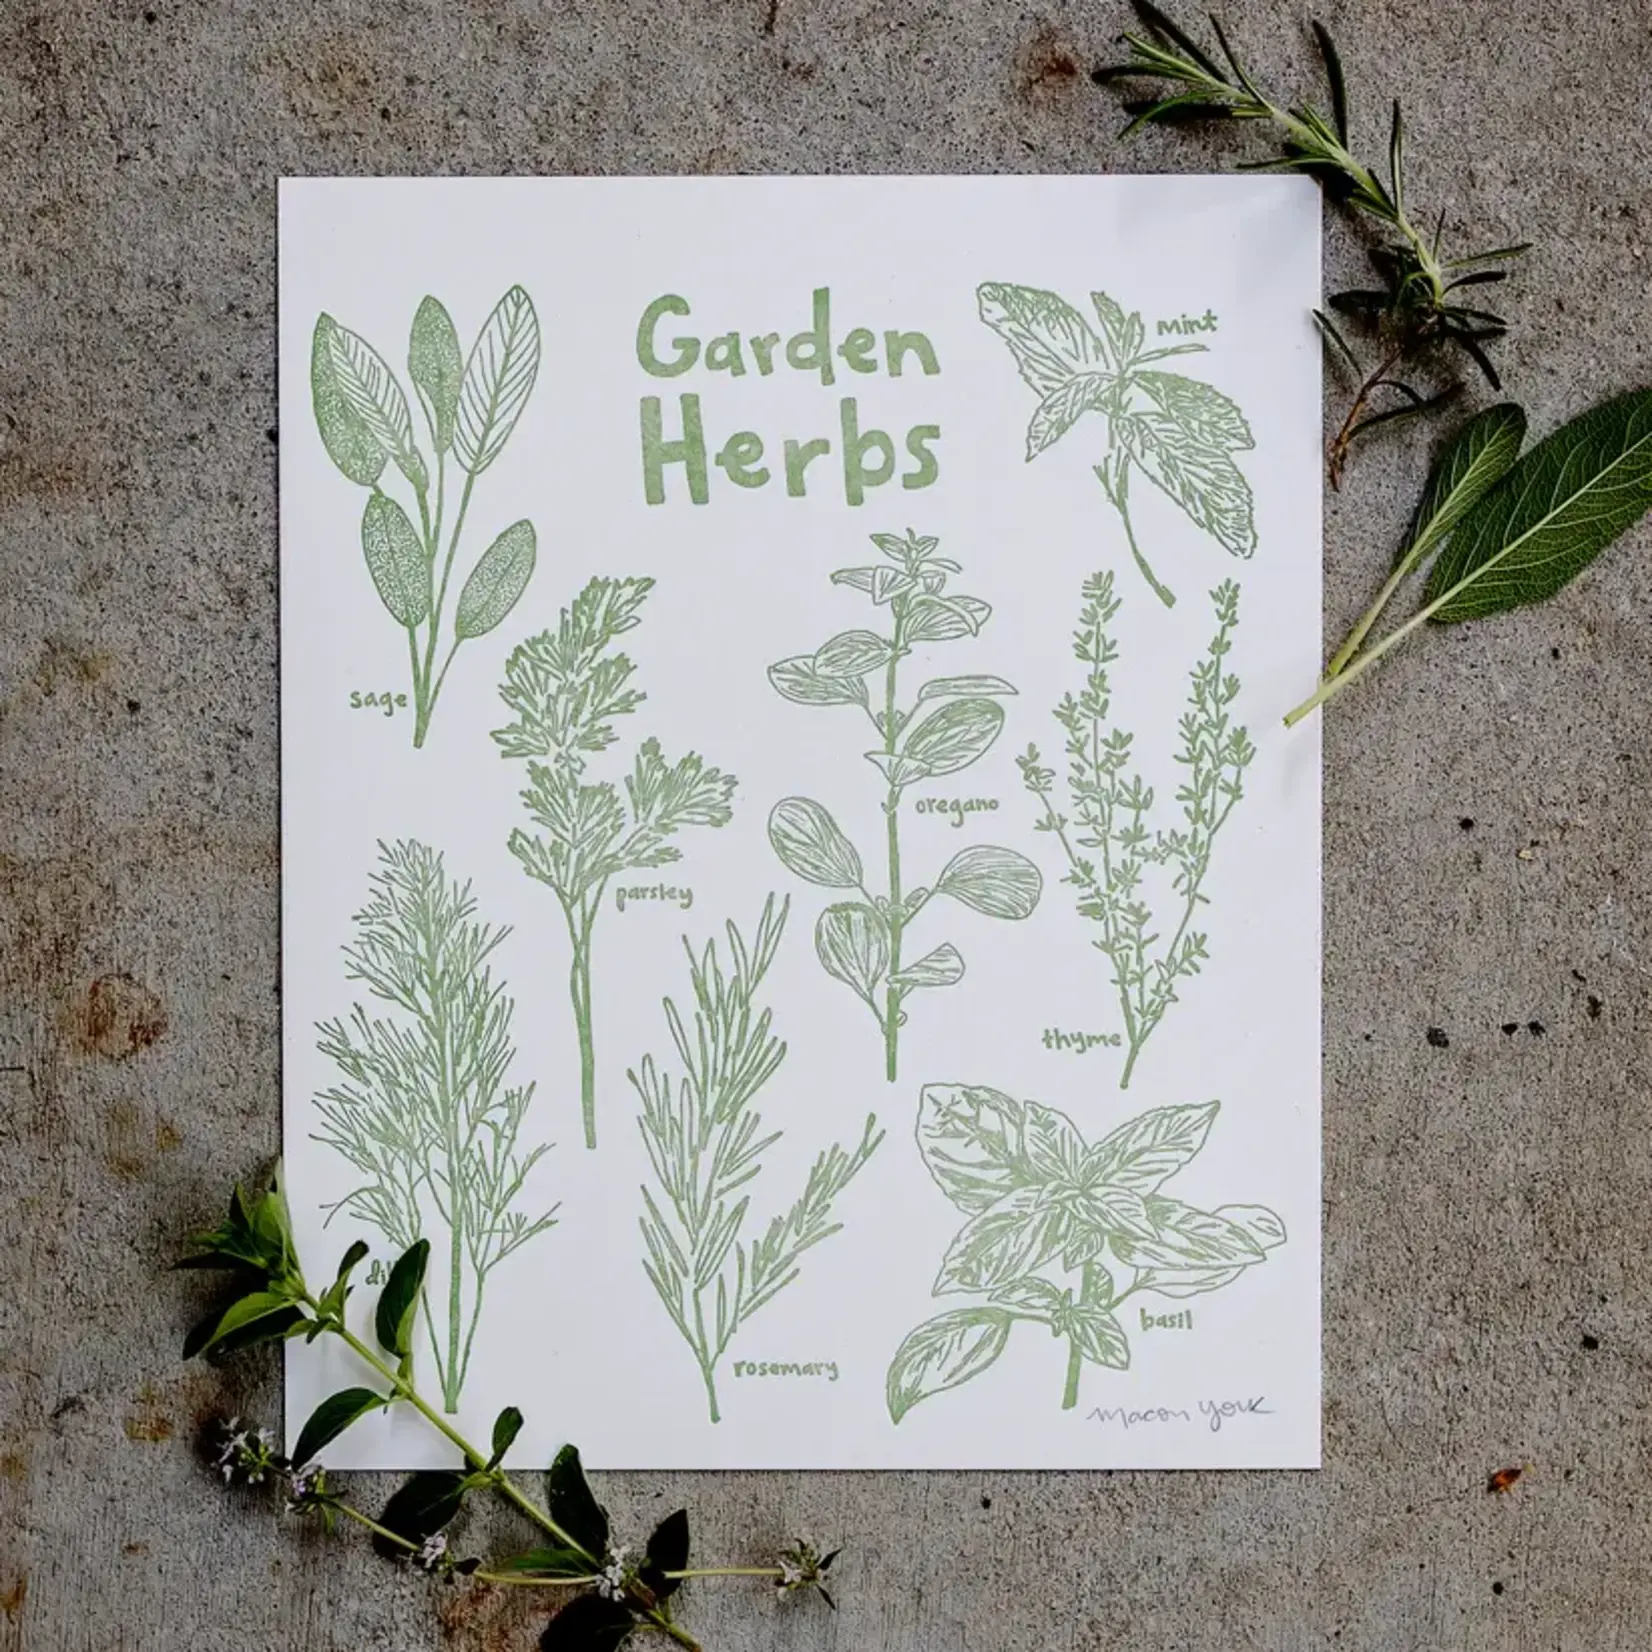 Macon York Press Macon York Press Print Garden Herbs 8 x 10